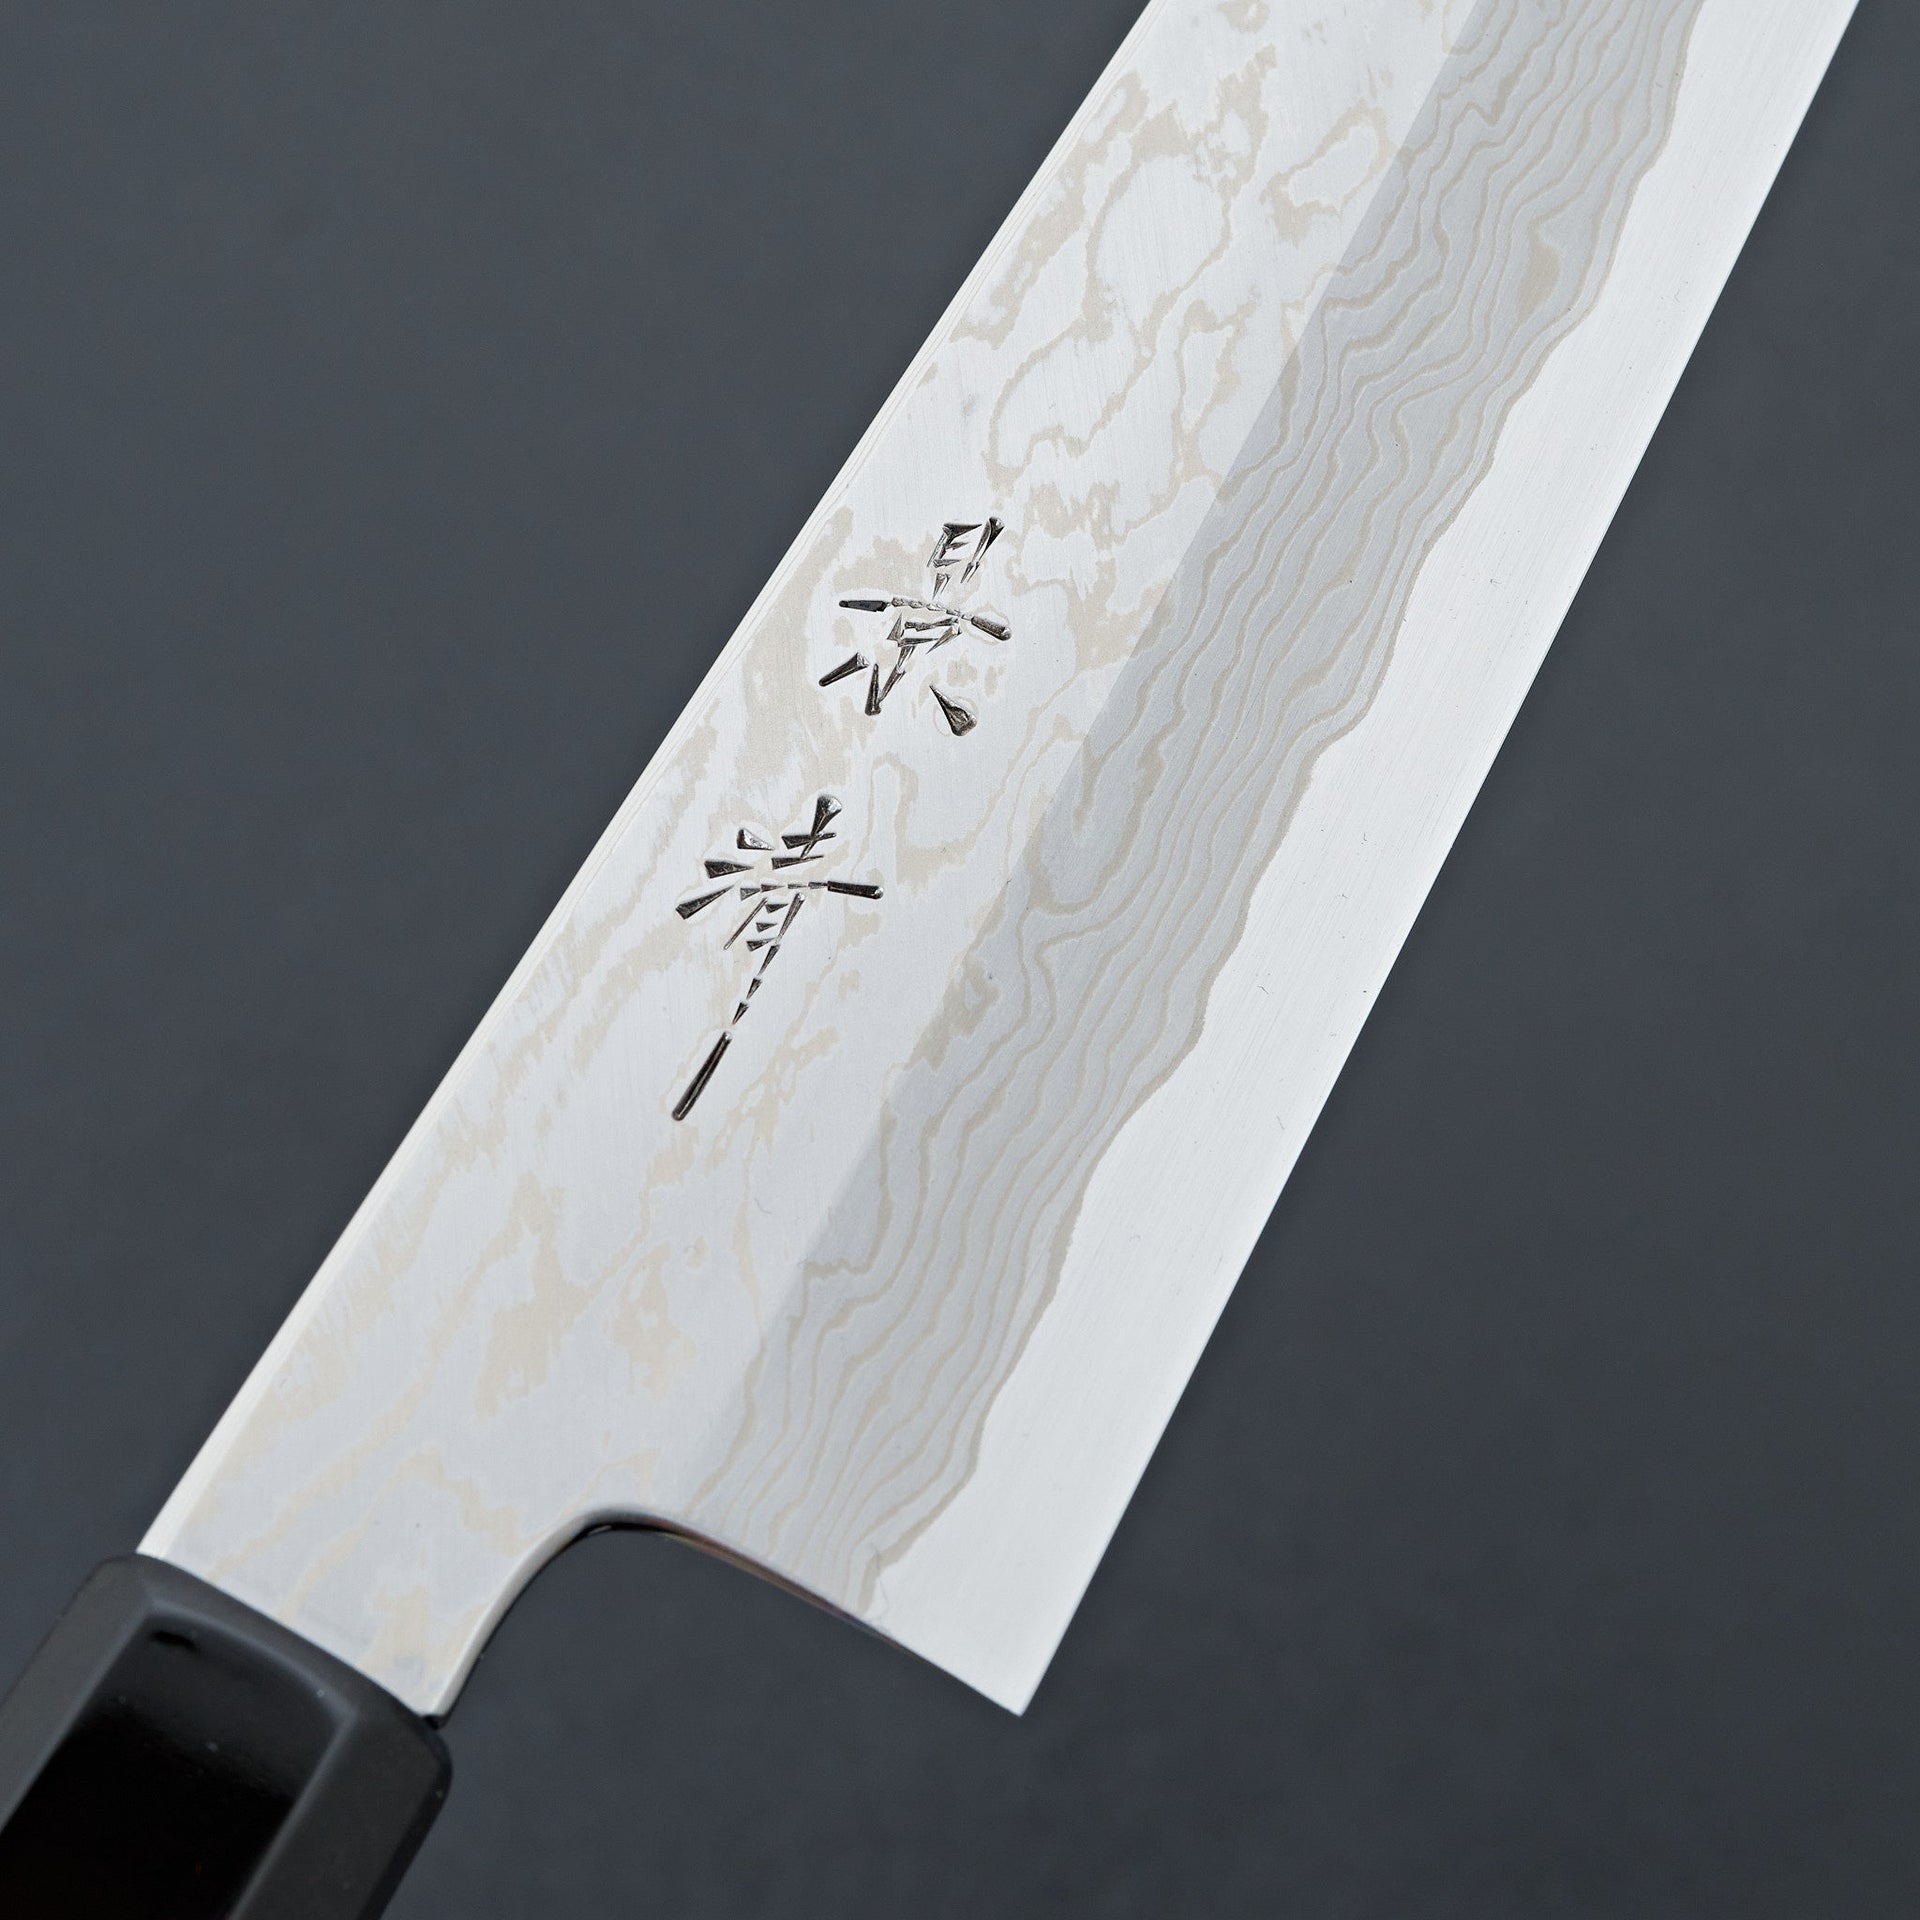 Kagekiyo Blue 1 Stainless Damascus Kiritsuke 240mm-Knife-Kagekiyo-Carbon Knife Co